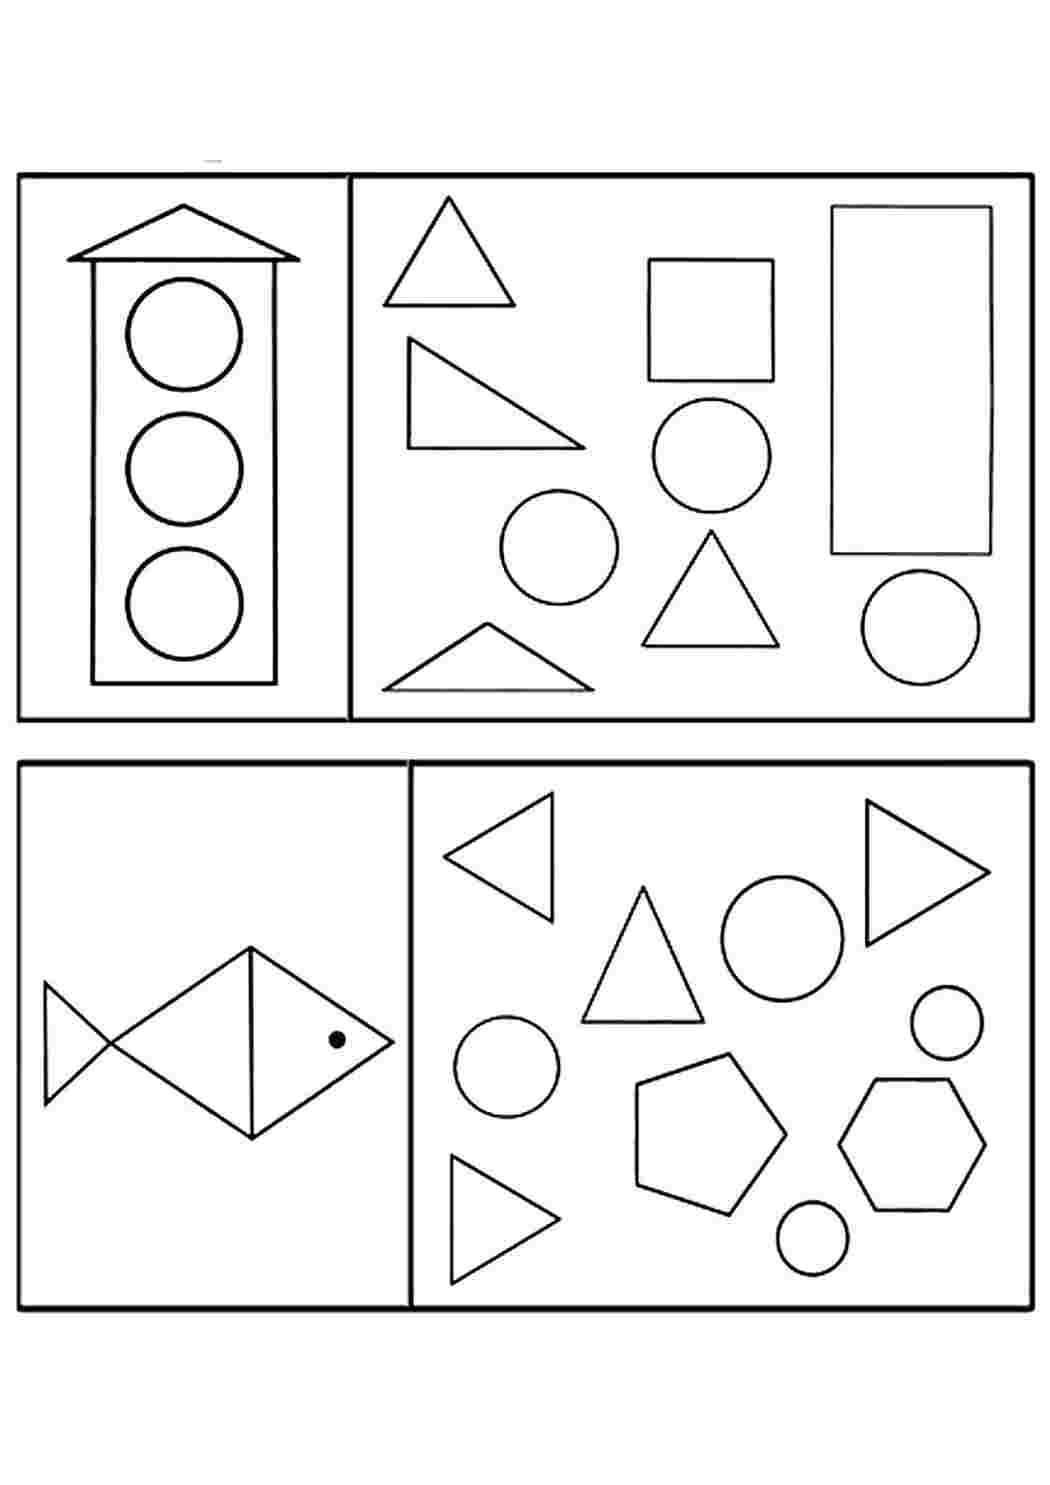 Занятия по математике 3 4 года. Задания с геом фигурами для дошкольников. Задания по ФЭМП для дошкольников фигуры. Задания по геометрическим фигурам для дошкольников. Задания по ФЭМП для детей 4-5 лет.